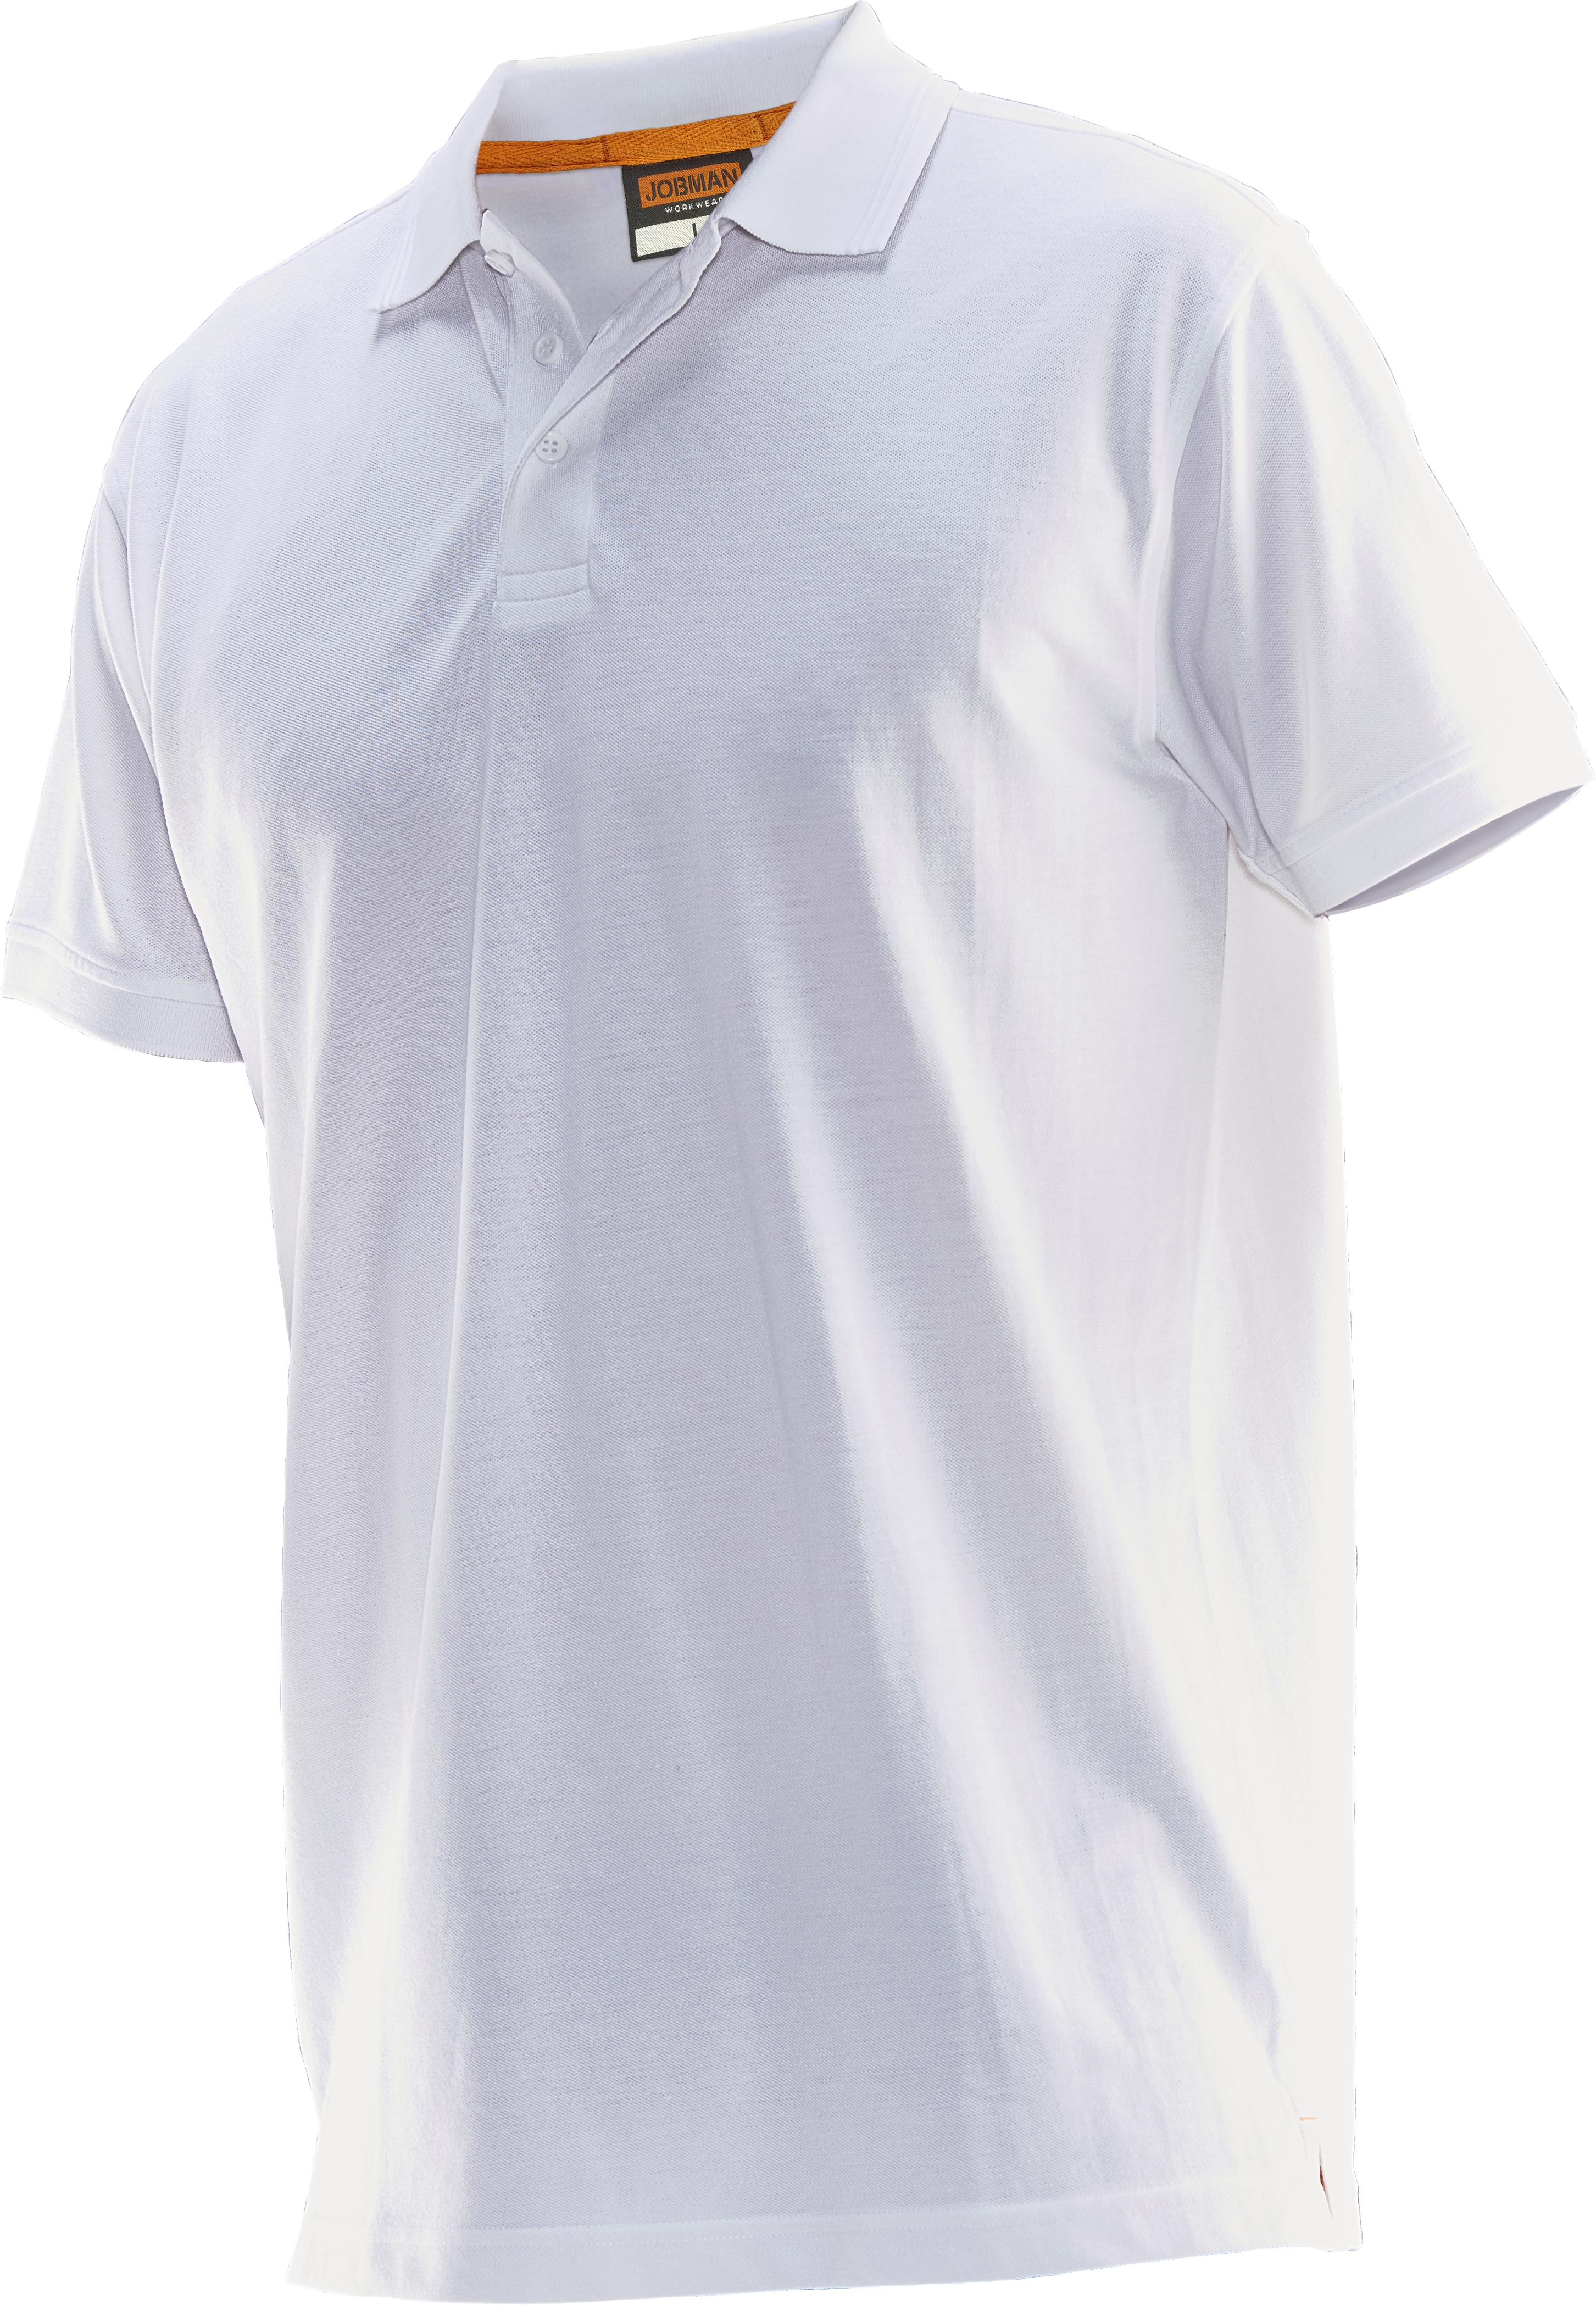 5564 T-shirt polo XL bland